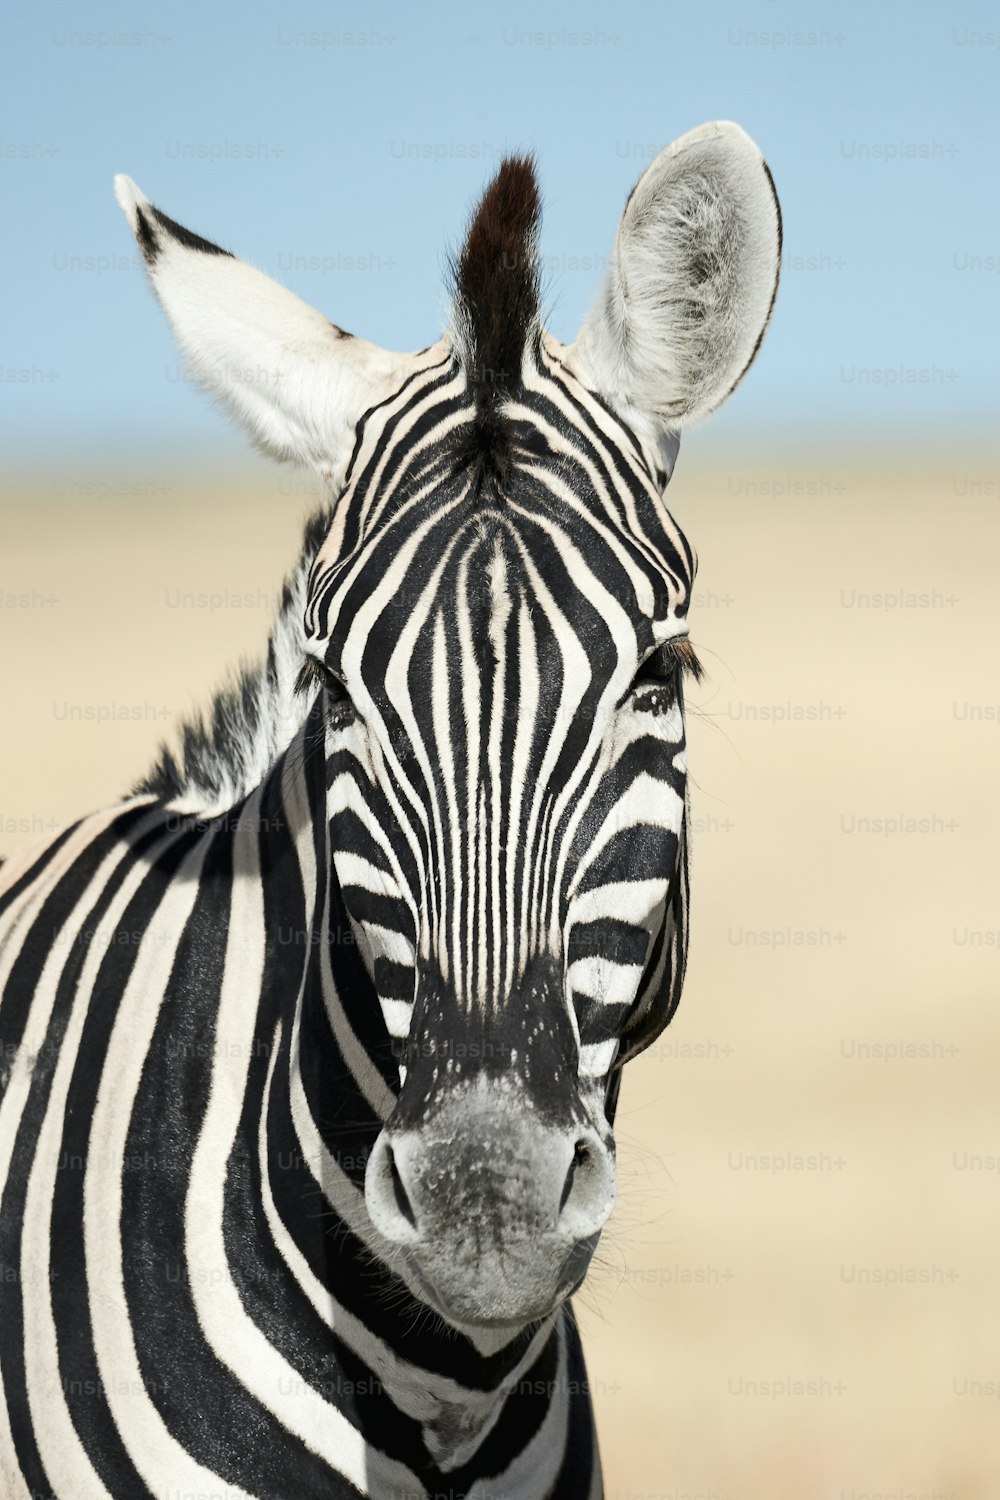 Retrato de uma bela zebra. Zebra fotografada na Namíbia.